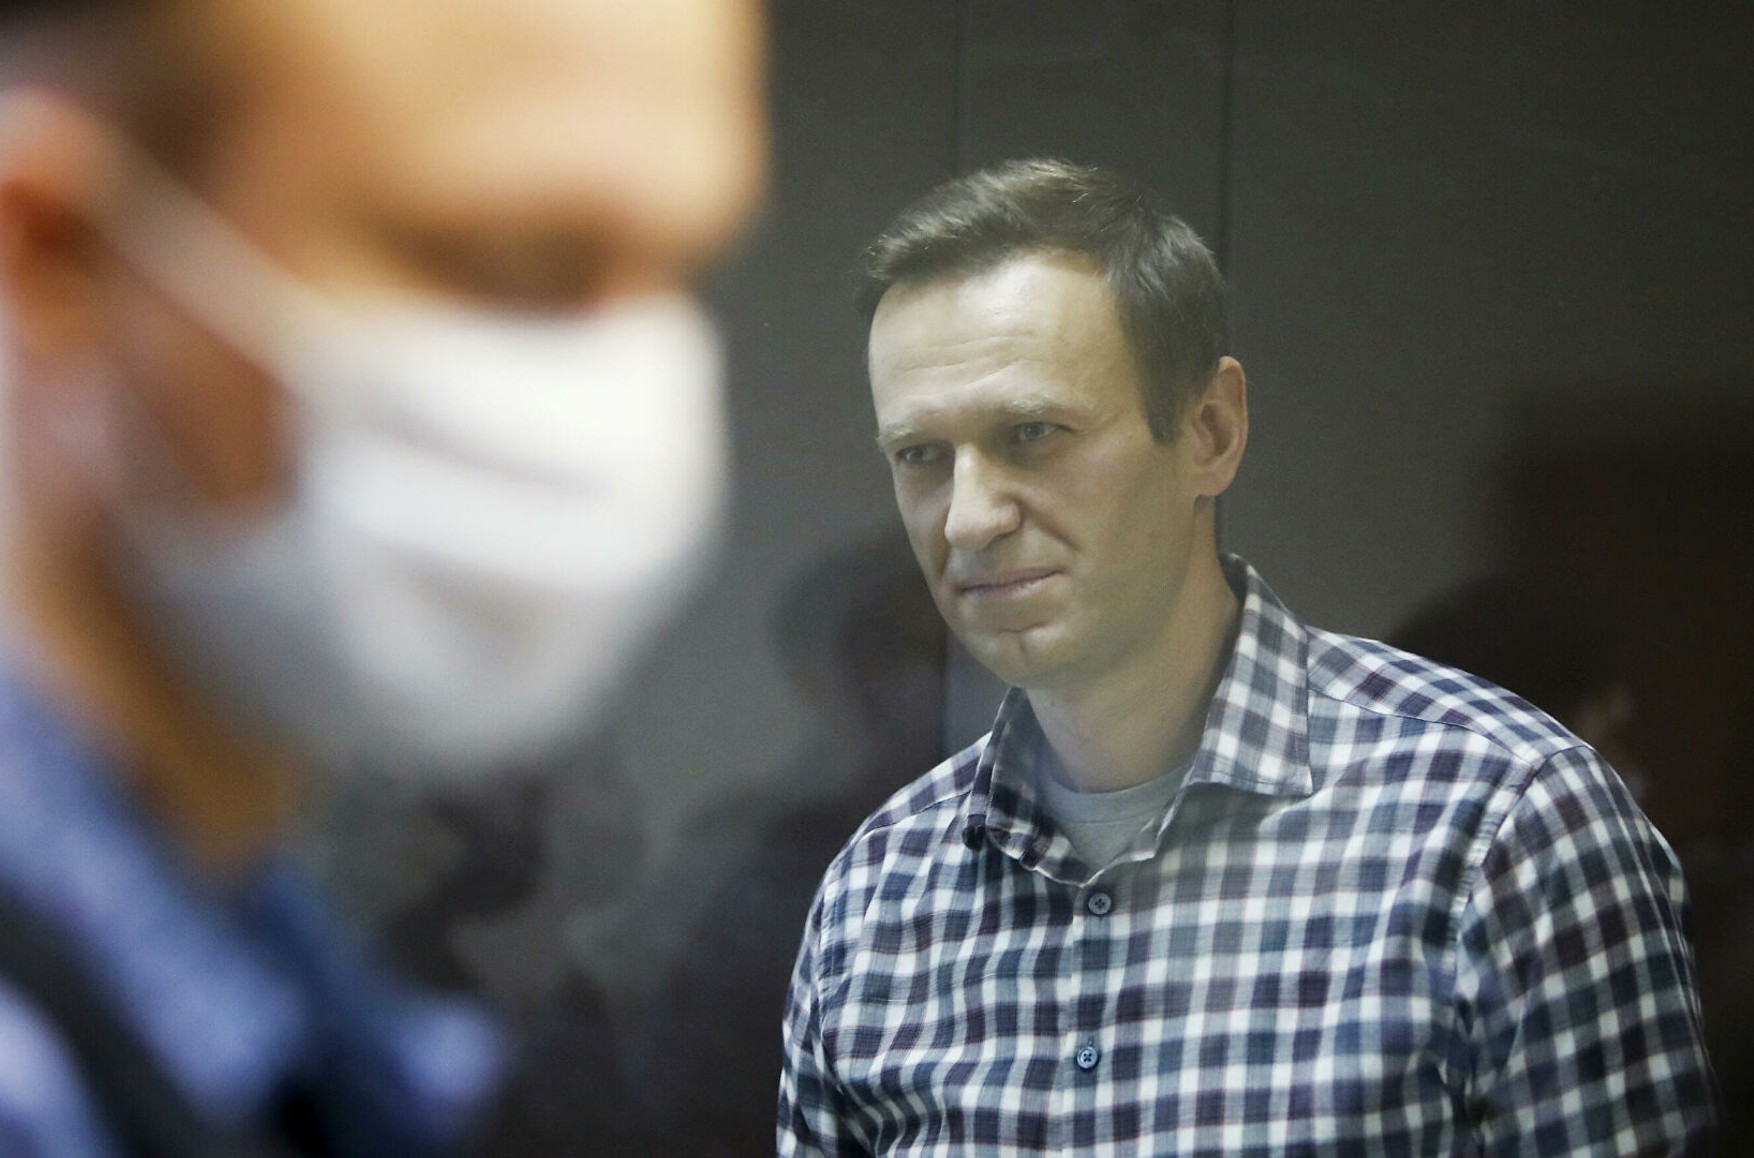 ФСВП: Навальному в колонії роблять всю необхідну медичну допомогу